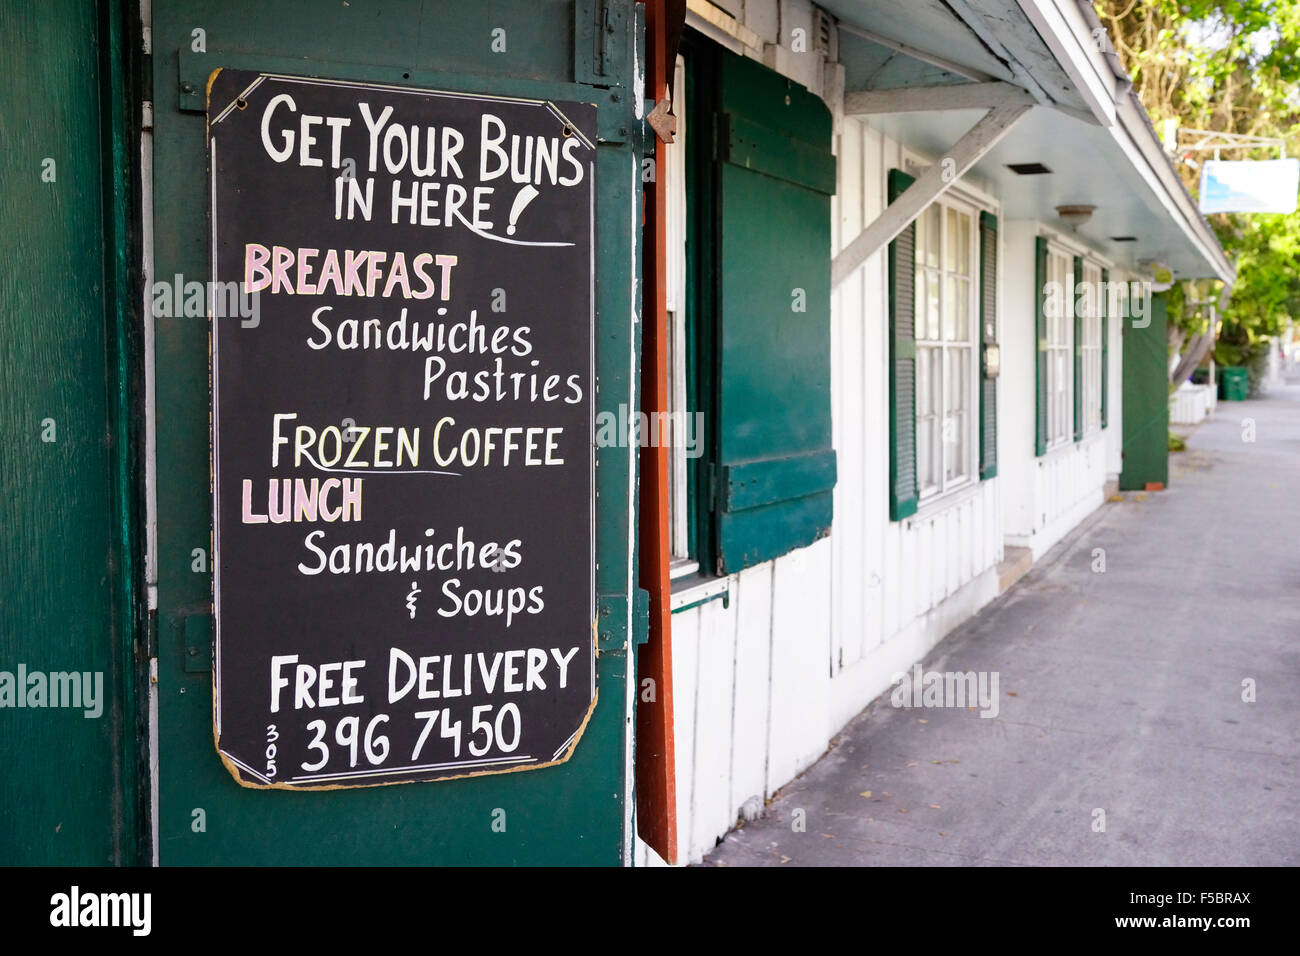 Boulangerie de la vieille ville de Key West, FL USA - à l'angle des rues Grinnell et Eaton. Retourne ici ! Panneau à l'entrée Banque D'Images